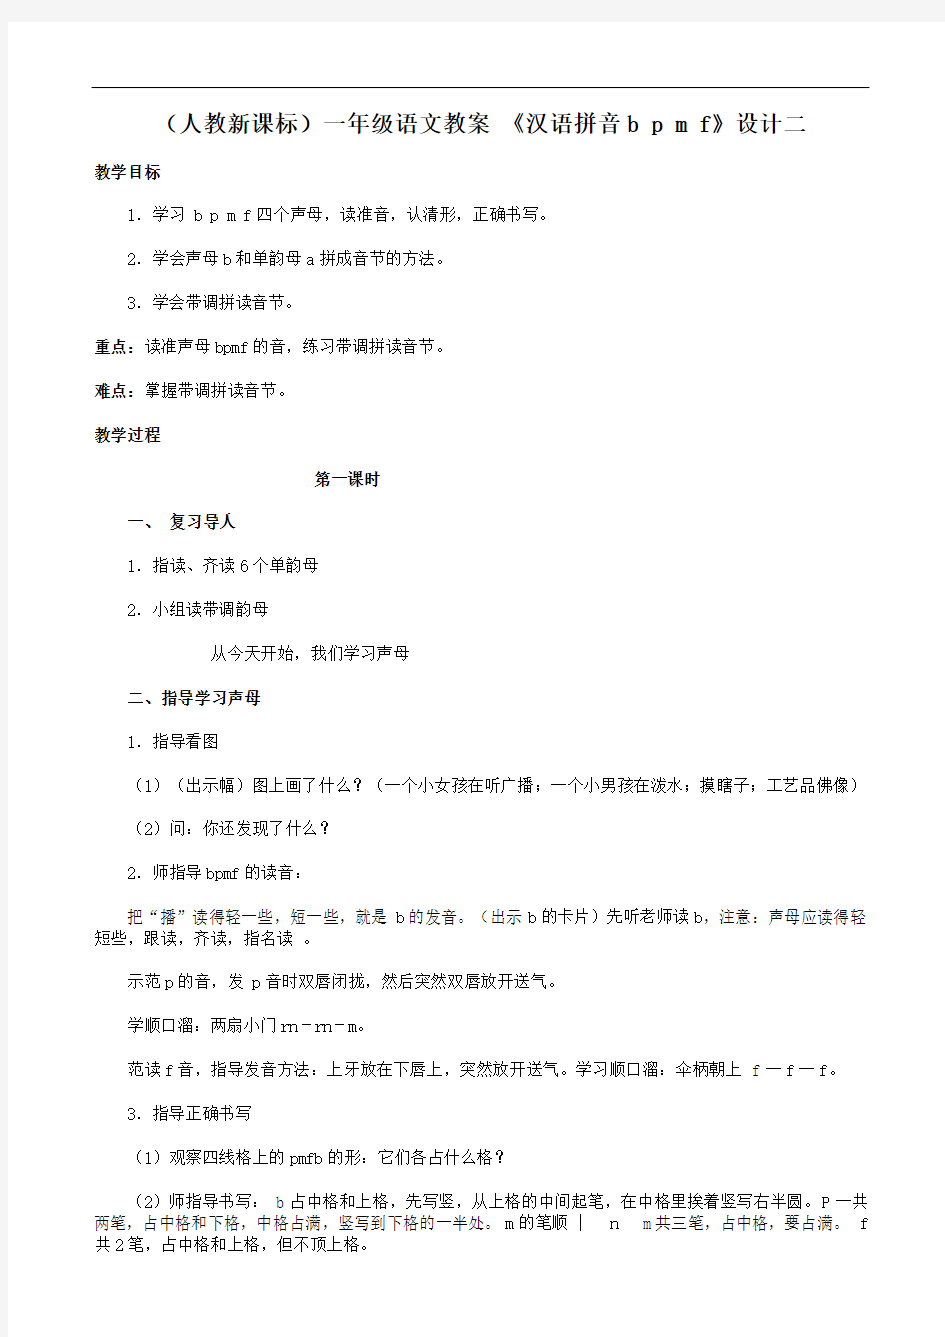 一年级教案汉语拼音bpmf(2)